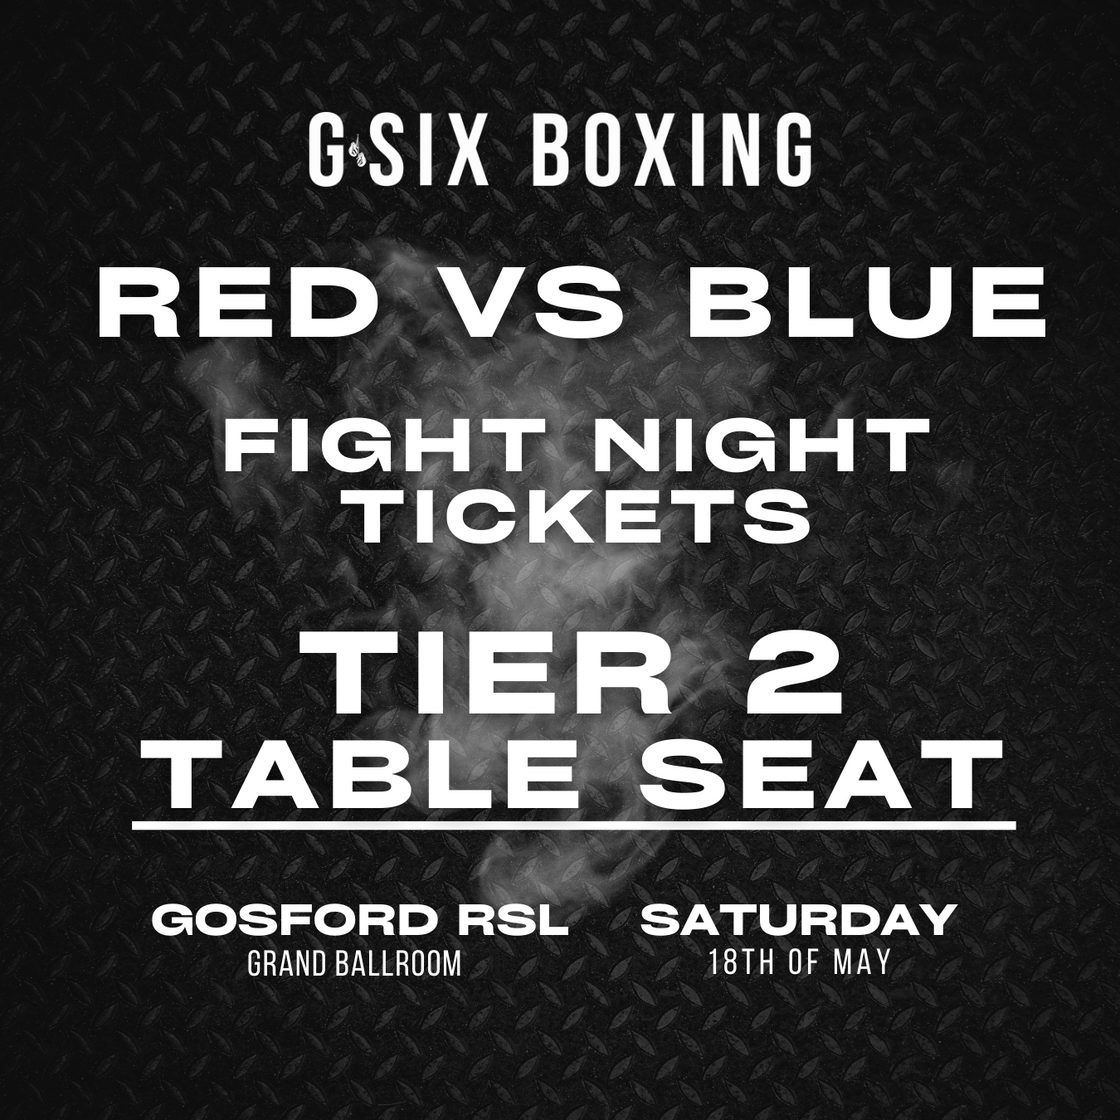 RVB 16 Fight Night Ticket- Tier 2 Table Ticket